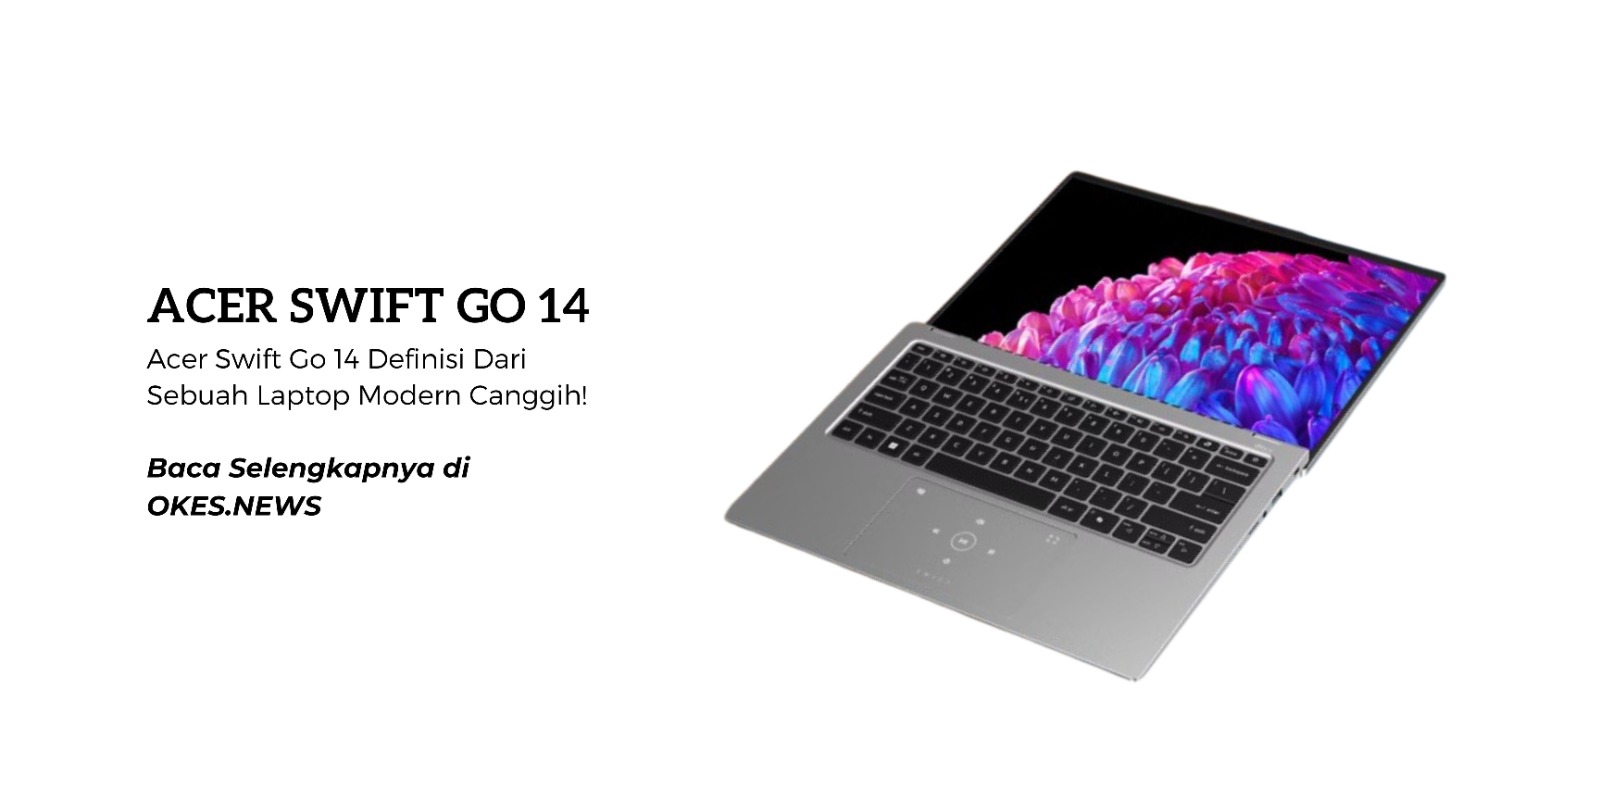 Waw, Acer Swift Go 14, Sebuah Laptop Modern Canggih! Begini Spesifikasi dan Fiturnya